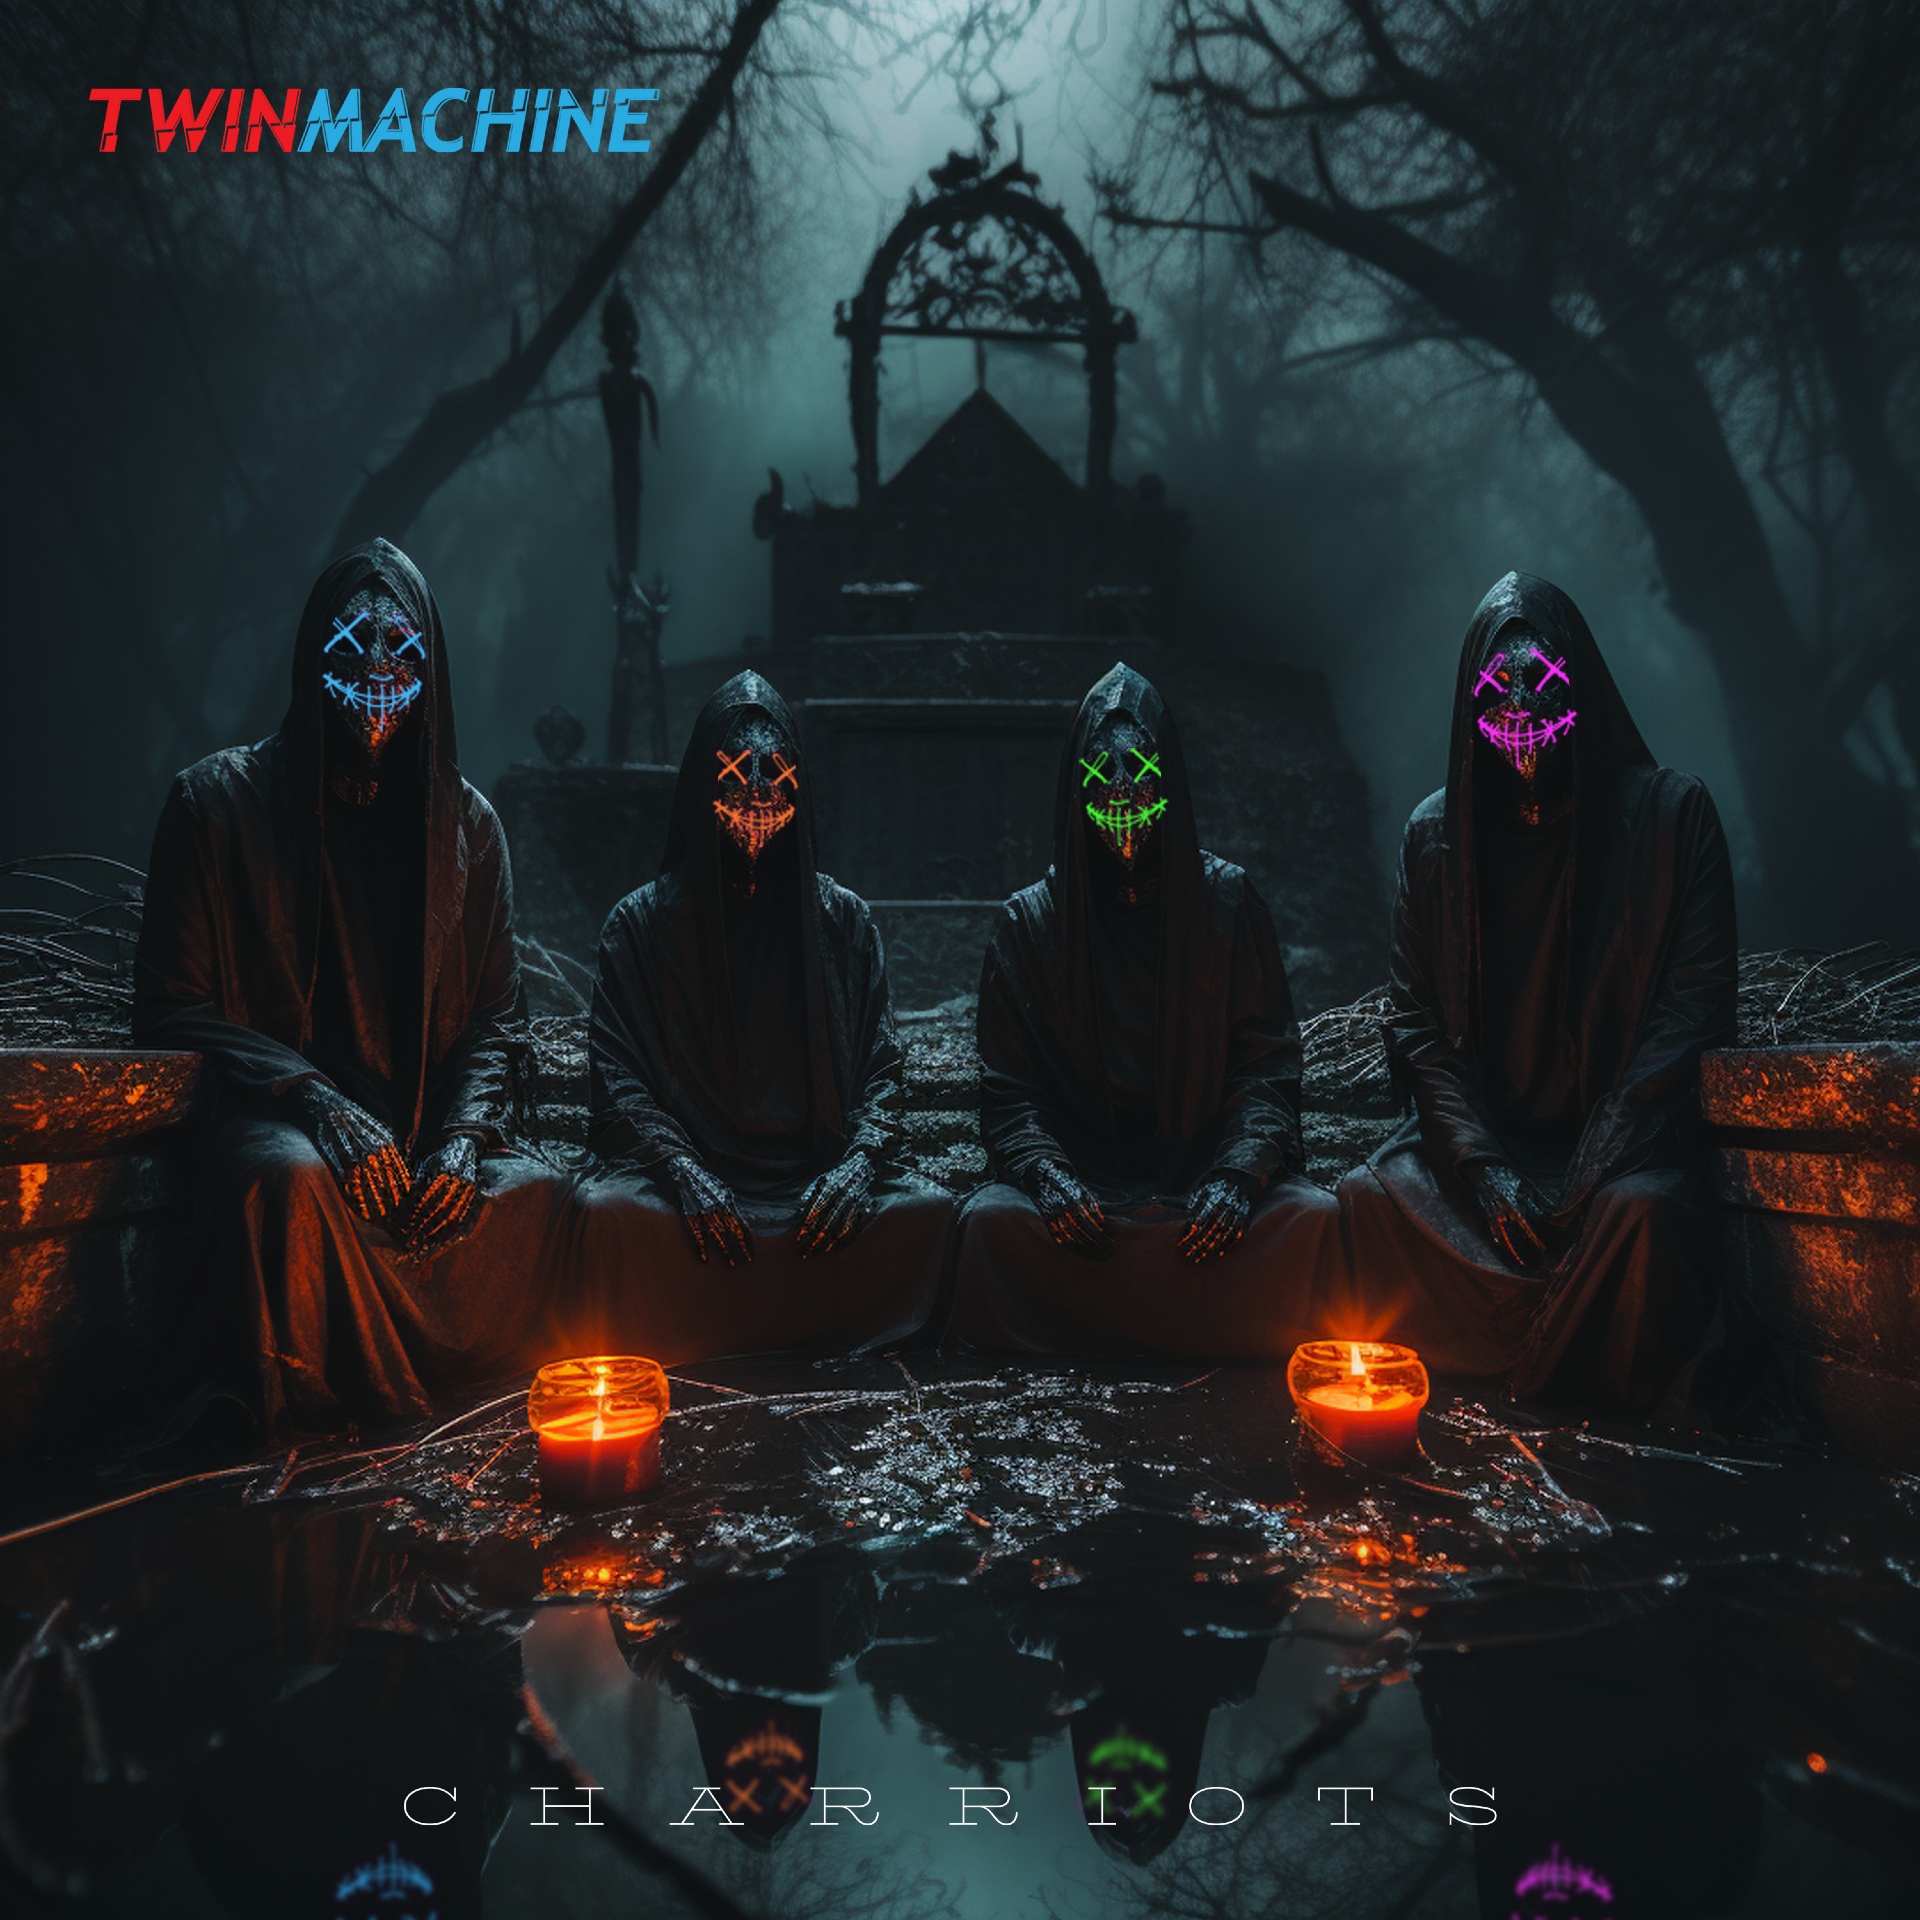  Descubre el futuro de la música electrónica: Twin Machine y su explosivo sencillo “Charriots”